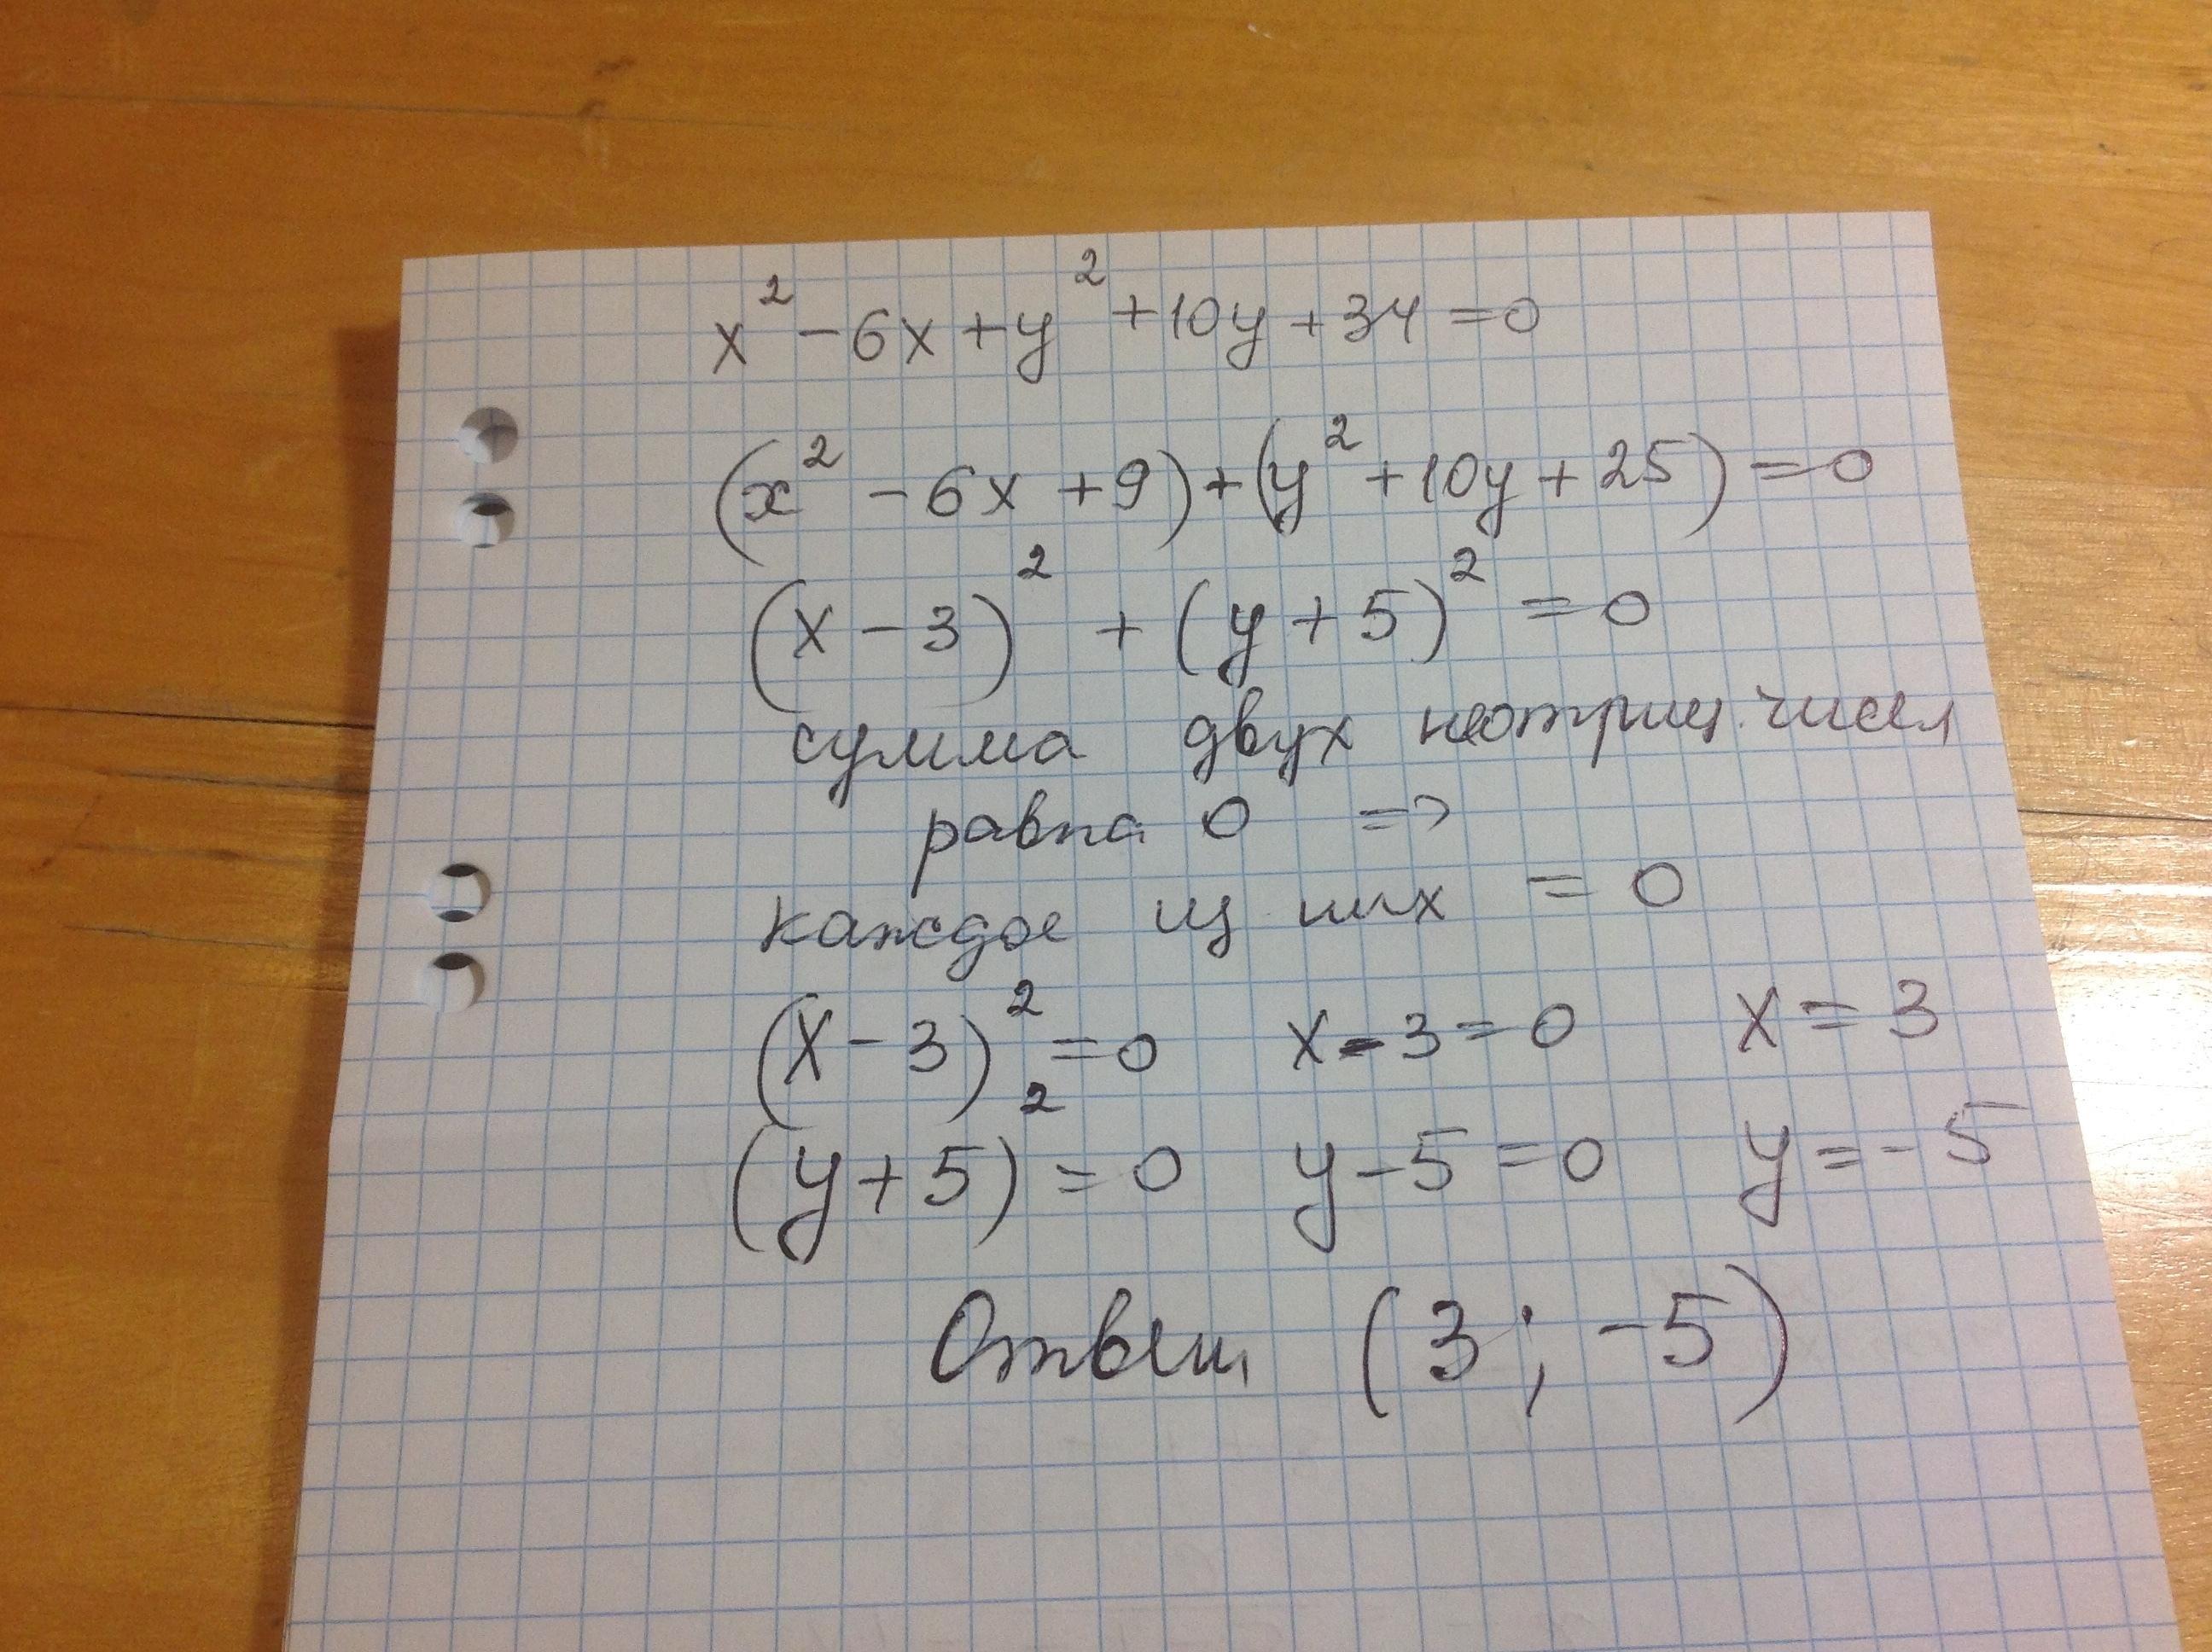 Y 2 x2 7x 10. X 2 Y 2 10x 6y 34 0 решите уравнение. (X−6)2 <10−−√(X−6) .. X2 + y2 − 2x + 6y + 10 = 0.. -2x^2-3x+34>0.